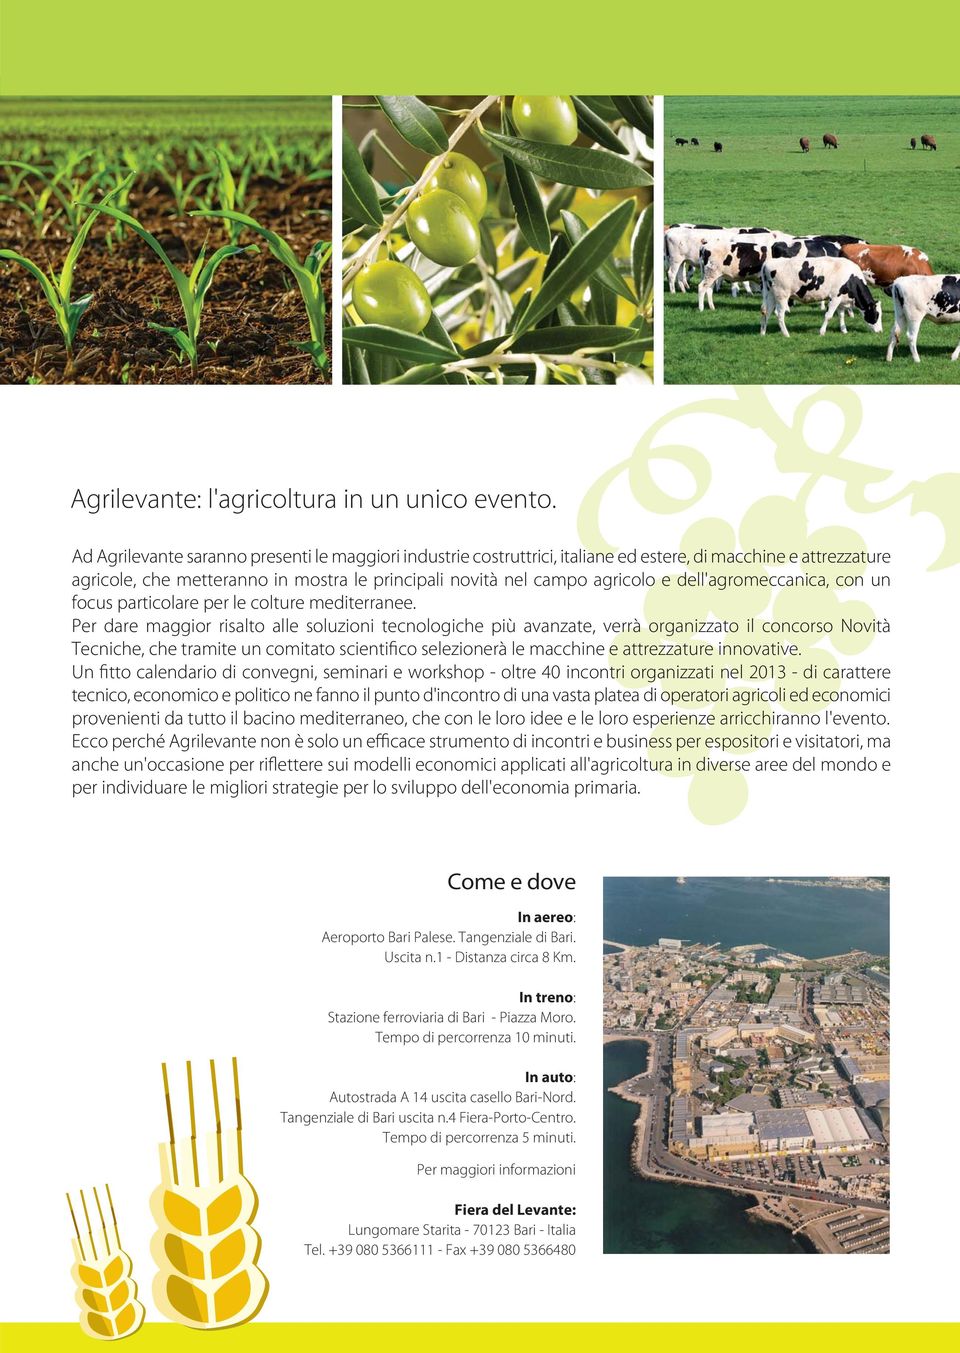 dell'agromeccanica, con un focus particolare per le colture mediterranee.